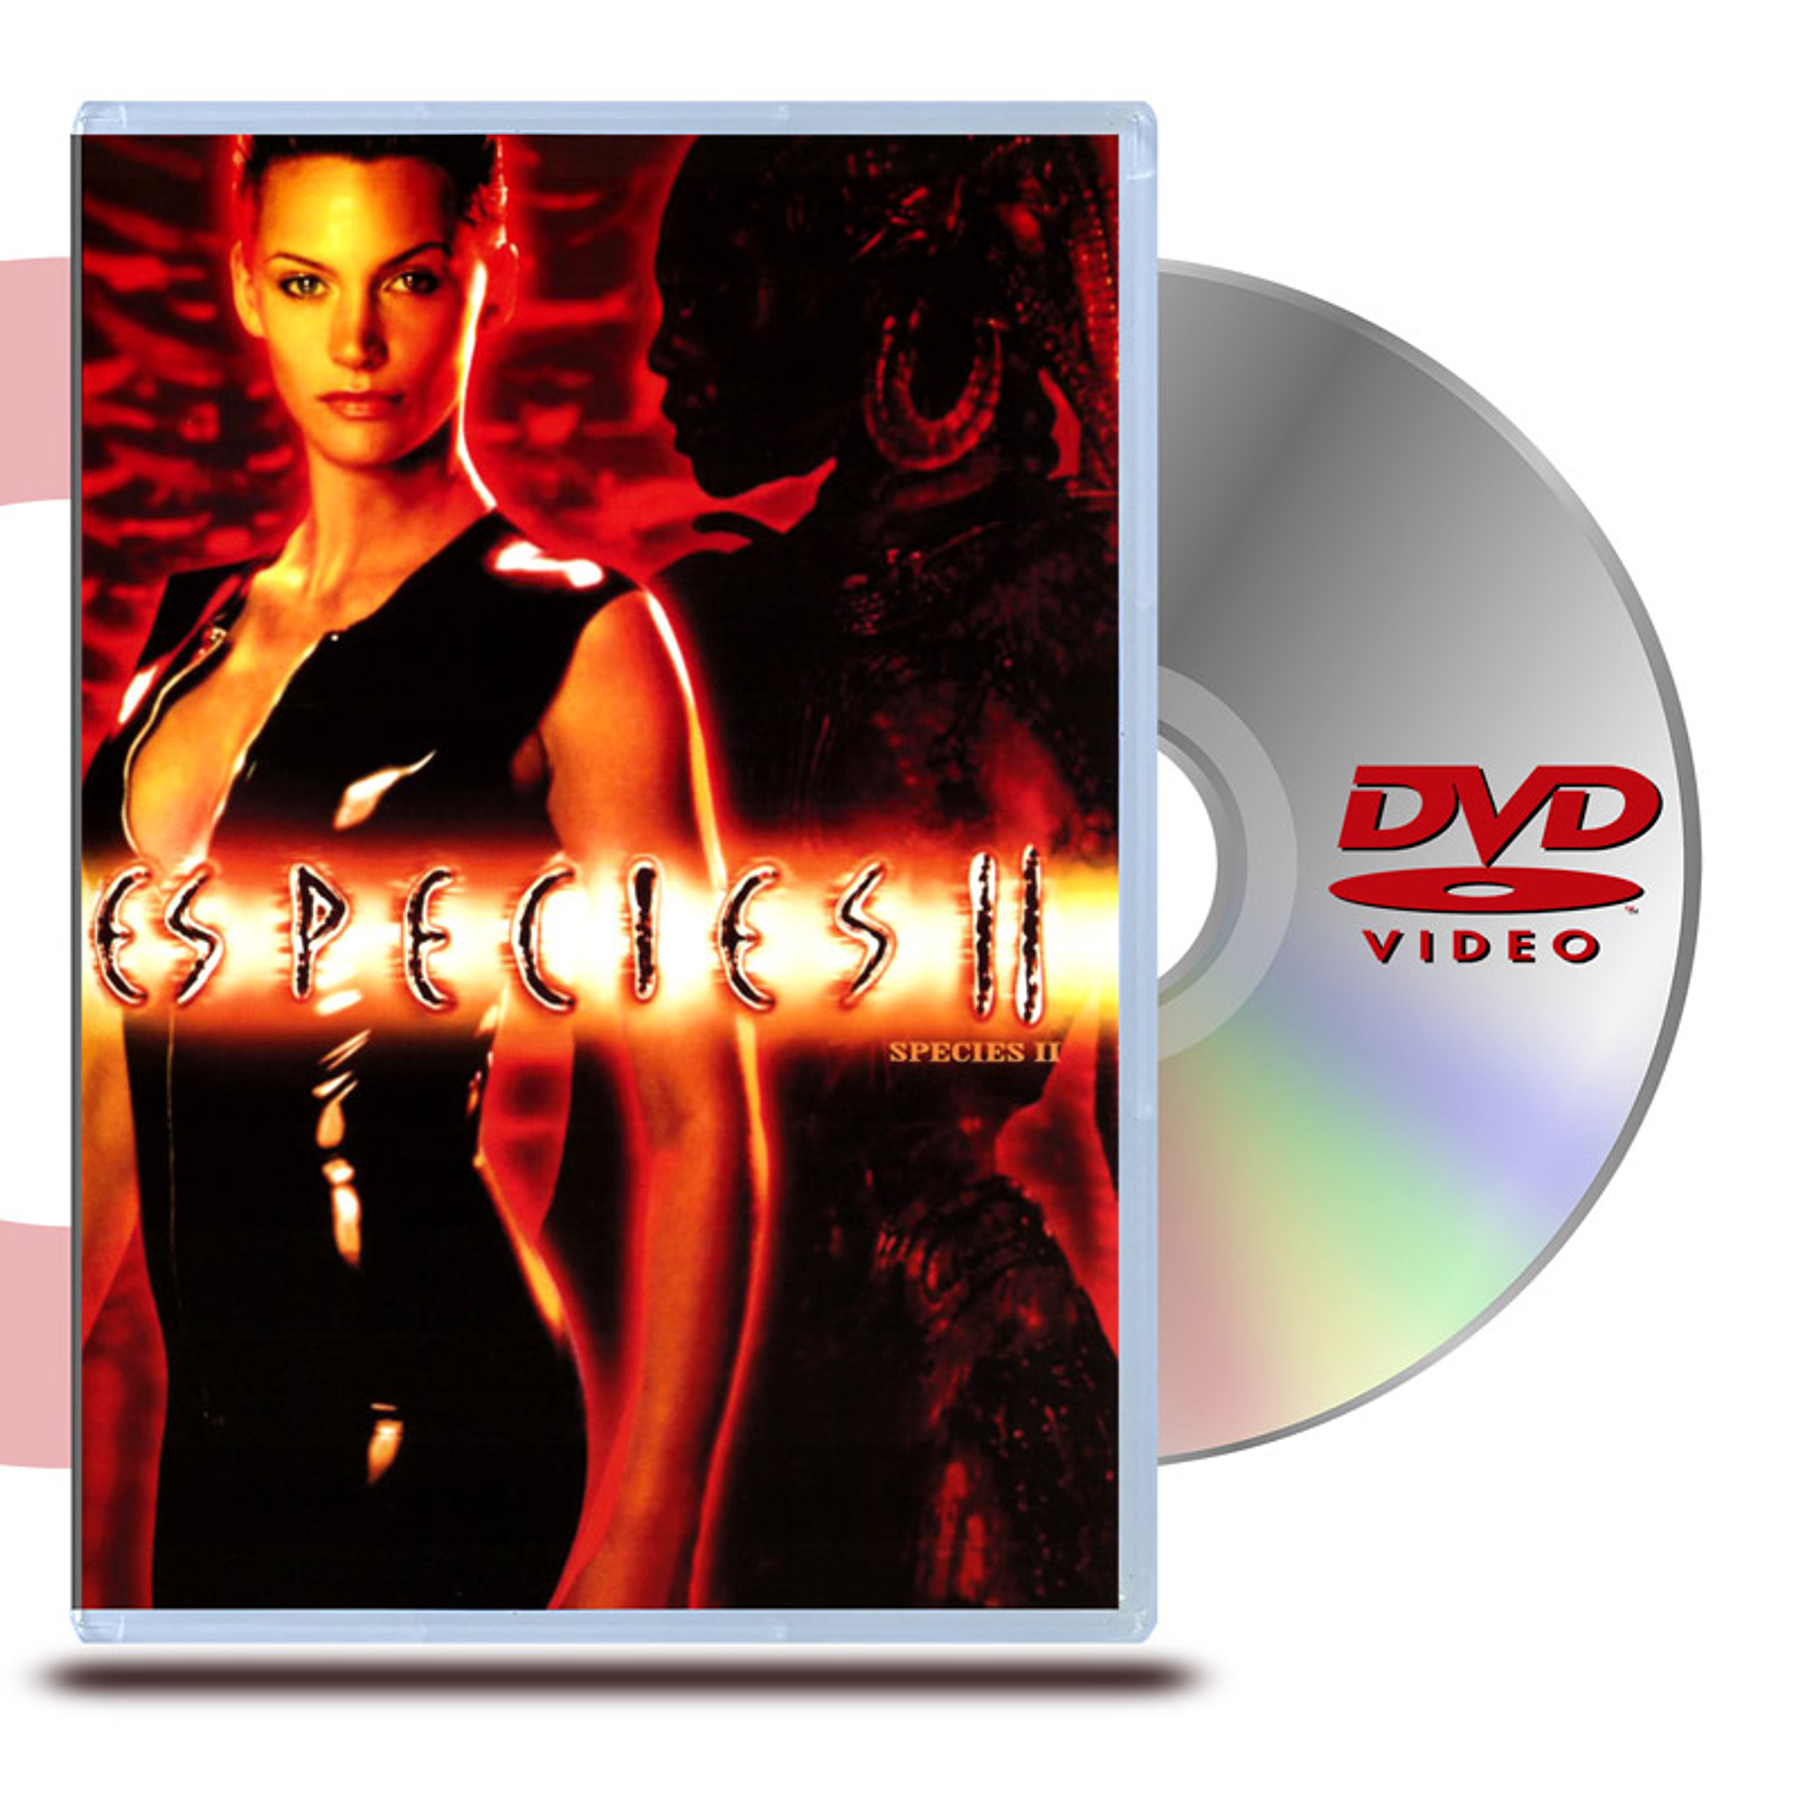 DVD ESPECIES II